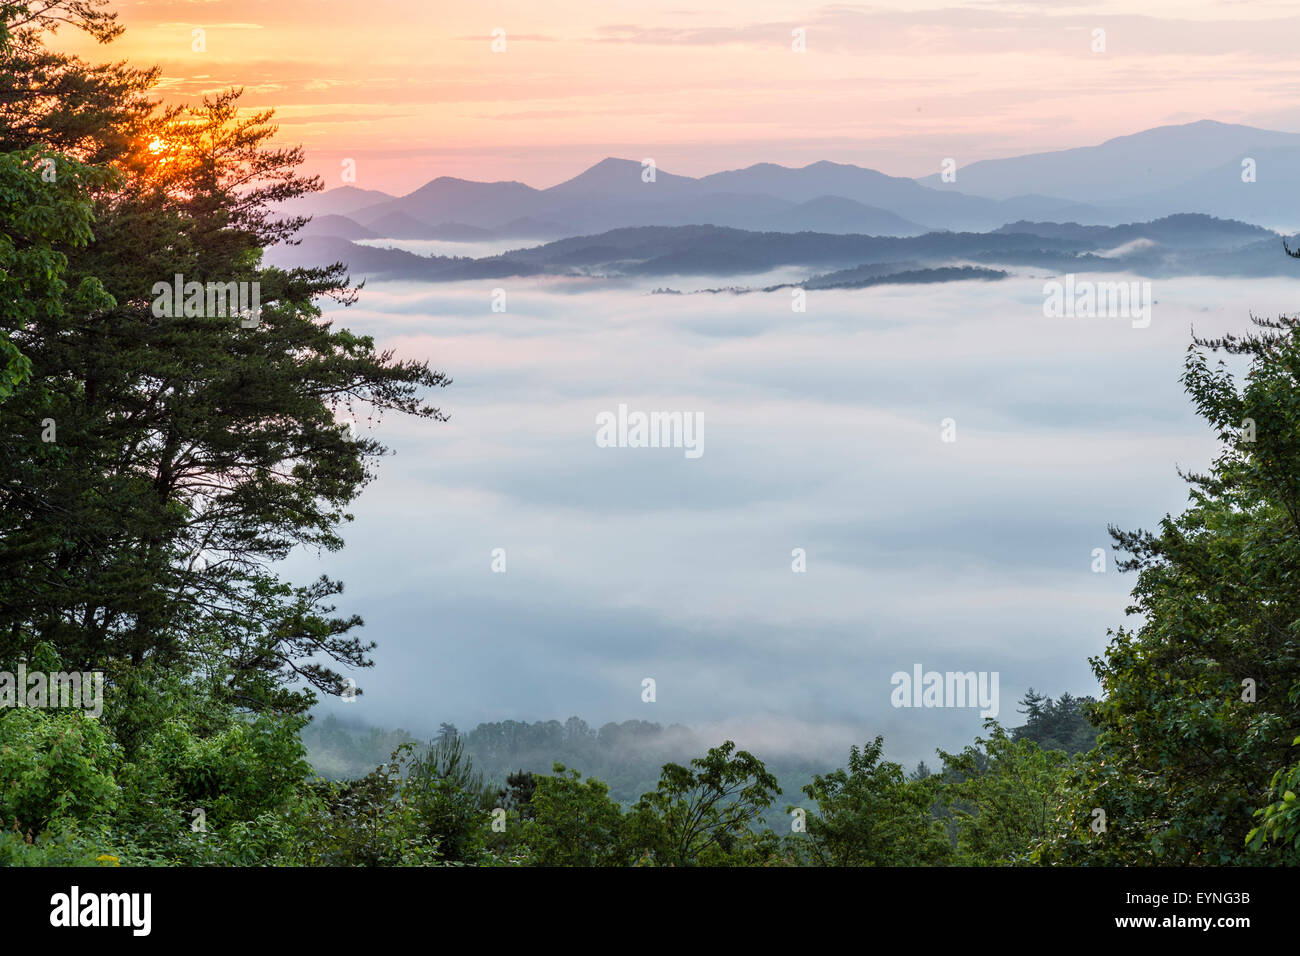 Valle cubierto de niebla con Great Smoky Mountains en el fondo. Amanecer en el paisaje americano de Tennessee. Foto de stock